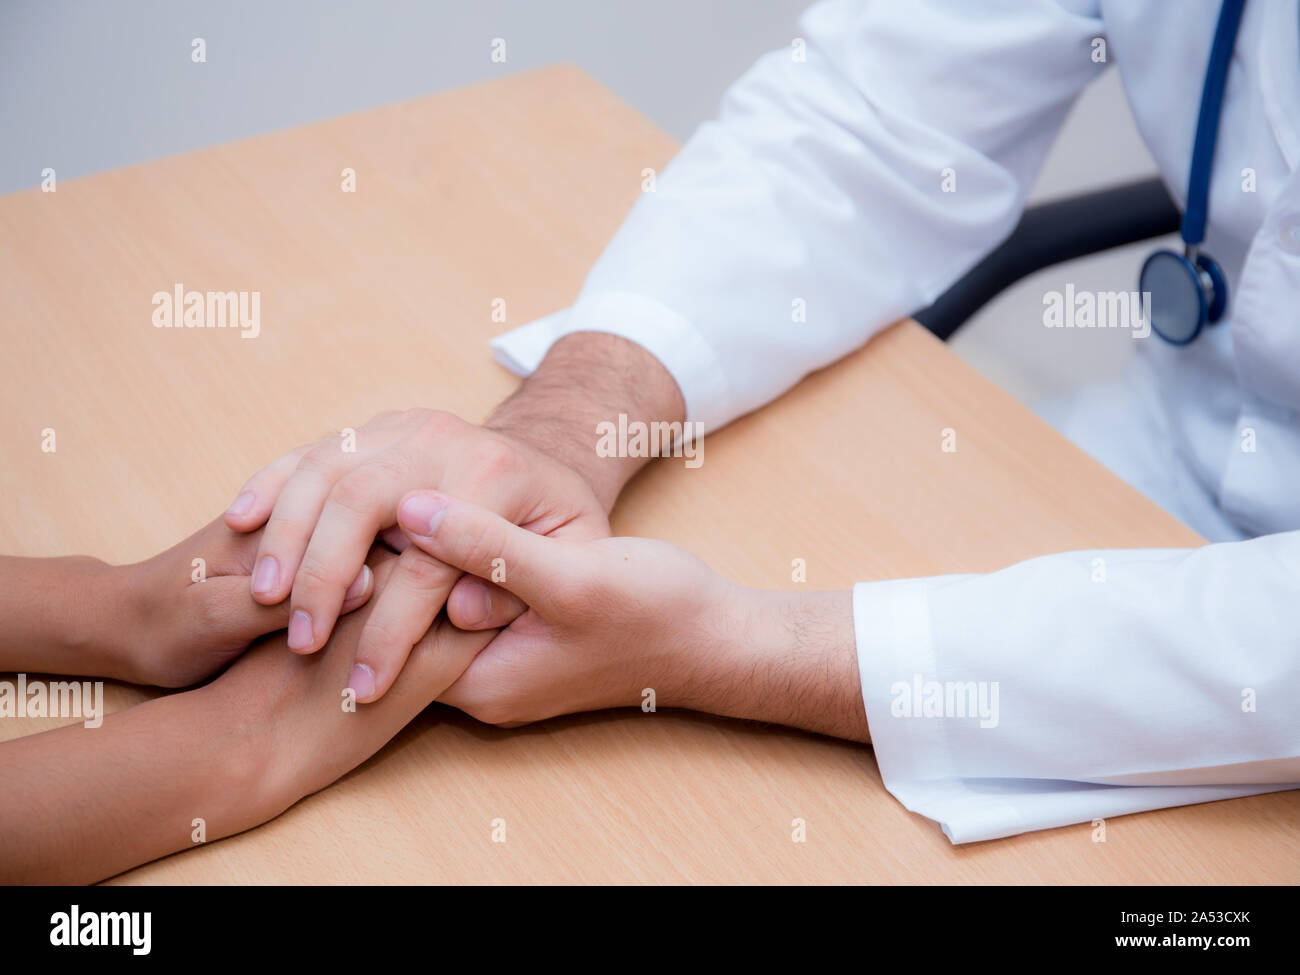 Friendly médecin homme main tenant la main du patient assis au bureau pour l'encouragement - empathie - encourager et soutenir alors que l'examen médical. Banque D'Images